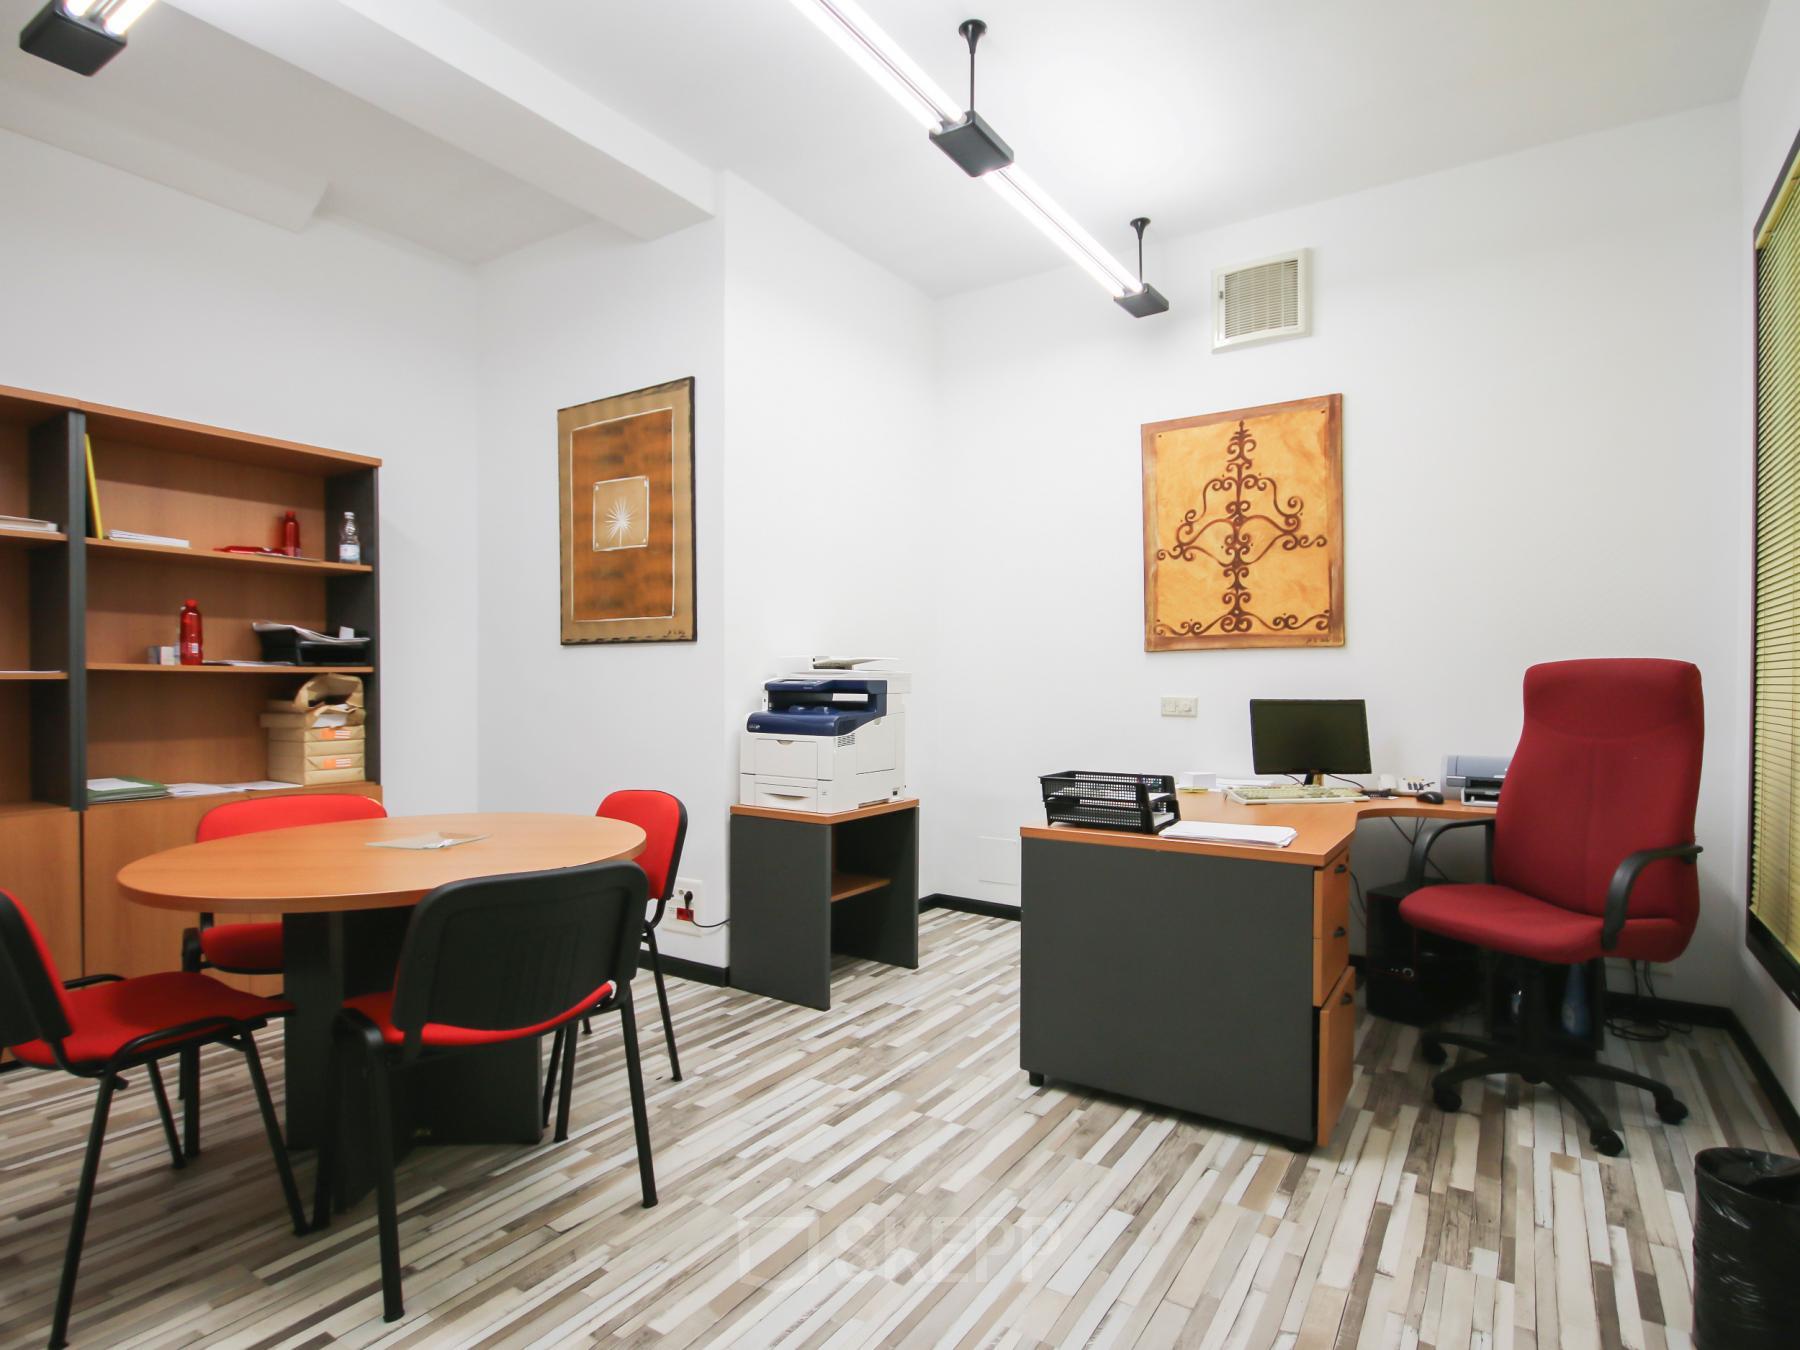 Oficina equipada para alquilar una oficina en Calle López de Aranda 35, Madrid, con mobiliario cómodo y decoración moderna.